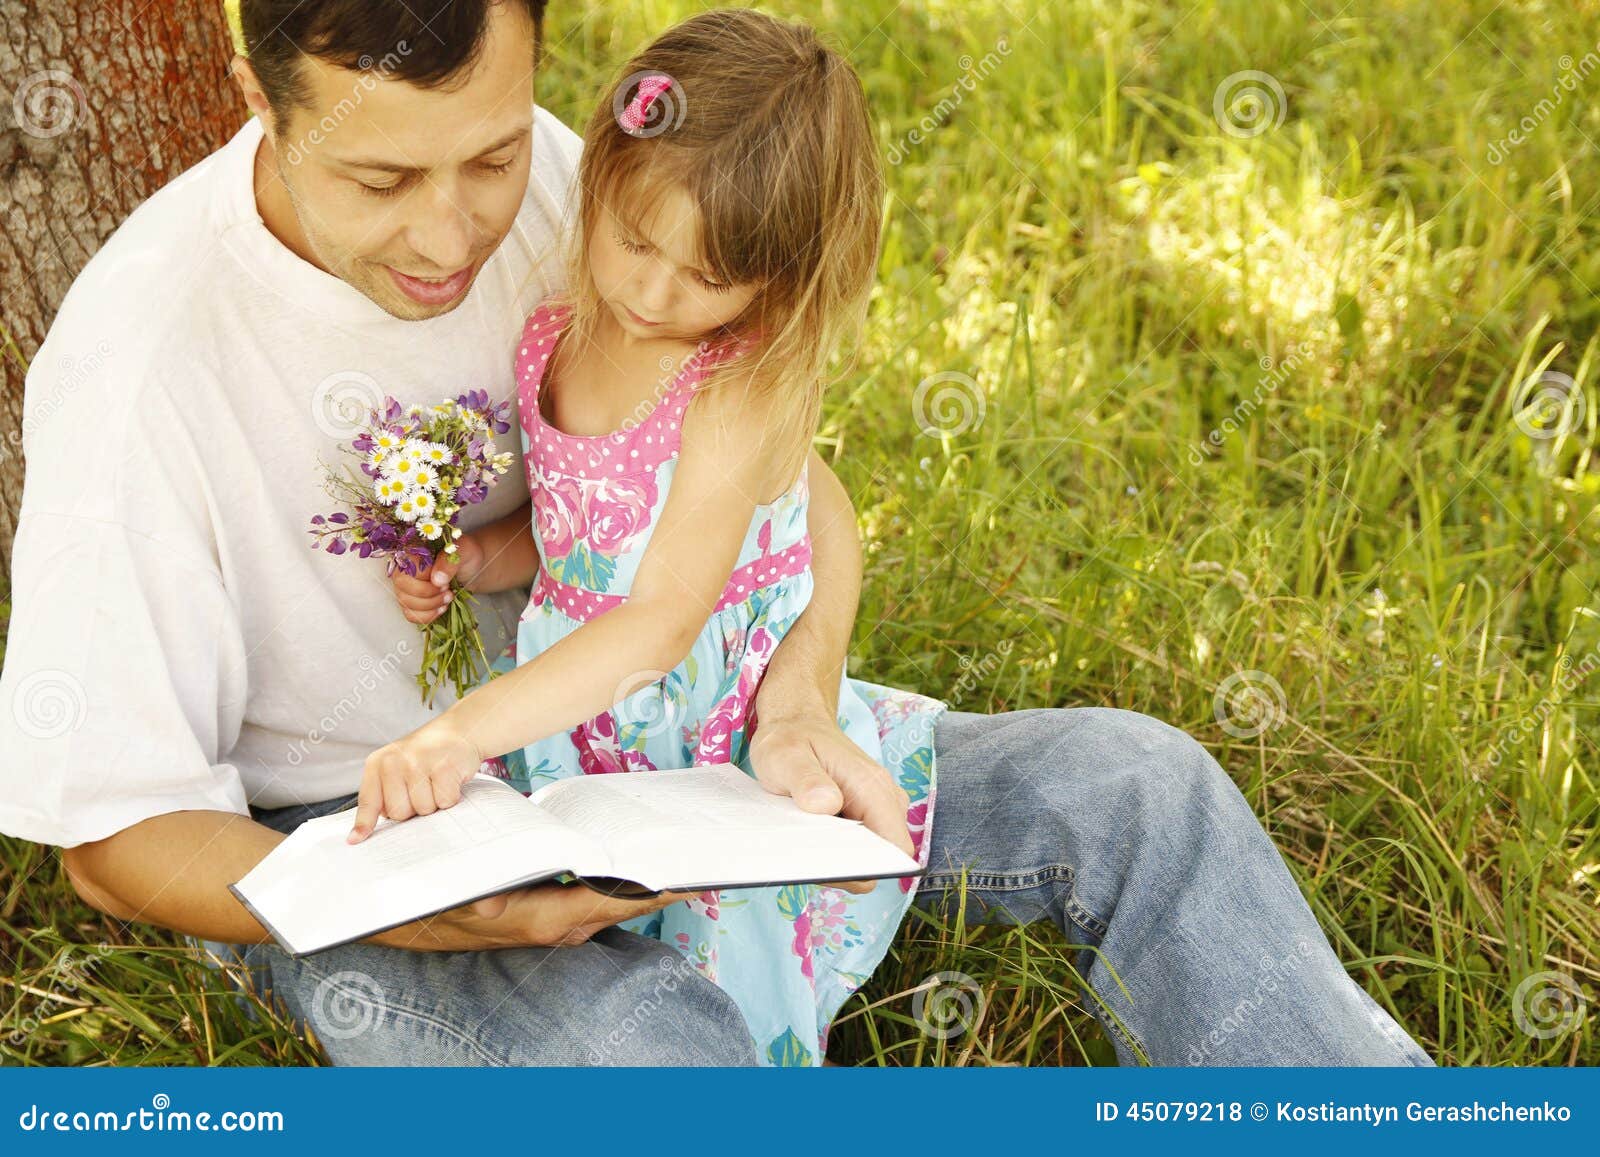 Будь моей семьей читать. Папа с дочкой читают Библию. Дети читают Библию. Семья в весенним саду читает Библию. Семья читает Библию фото.